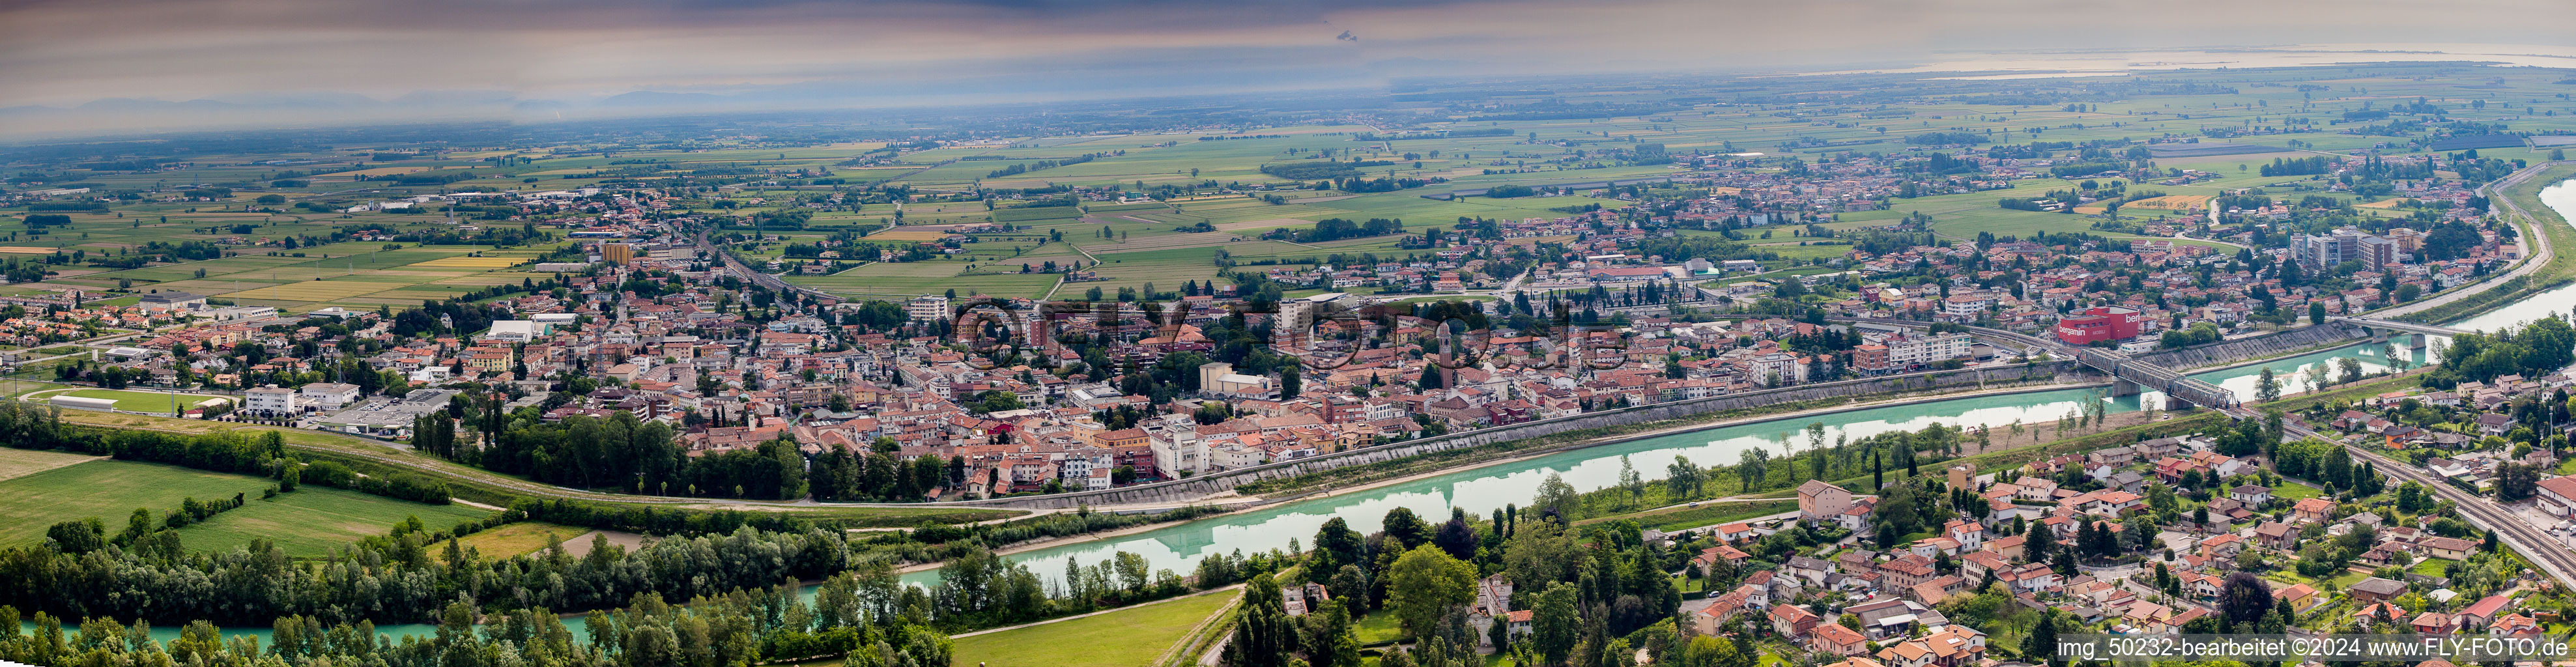 Panorama Perspektive Stadtzentrum im Innenstadtbereich am Ufer des Flußverlaufes des Tagliamento in Latisana in Friuli-Venezia Giulia im Bundesland Friaul-Julisch Venetien, Italien